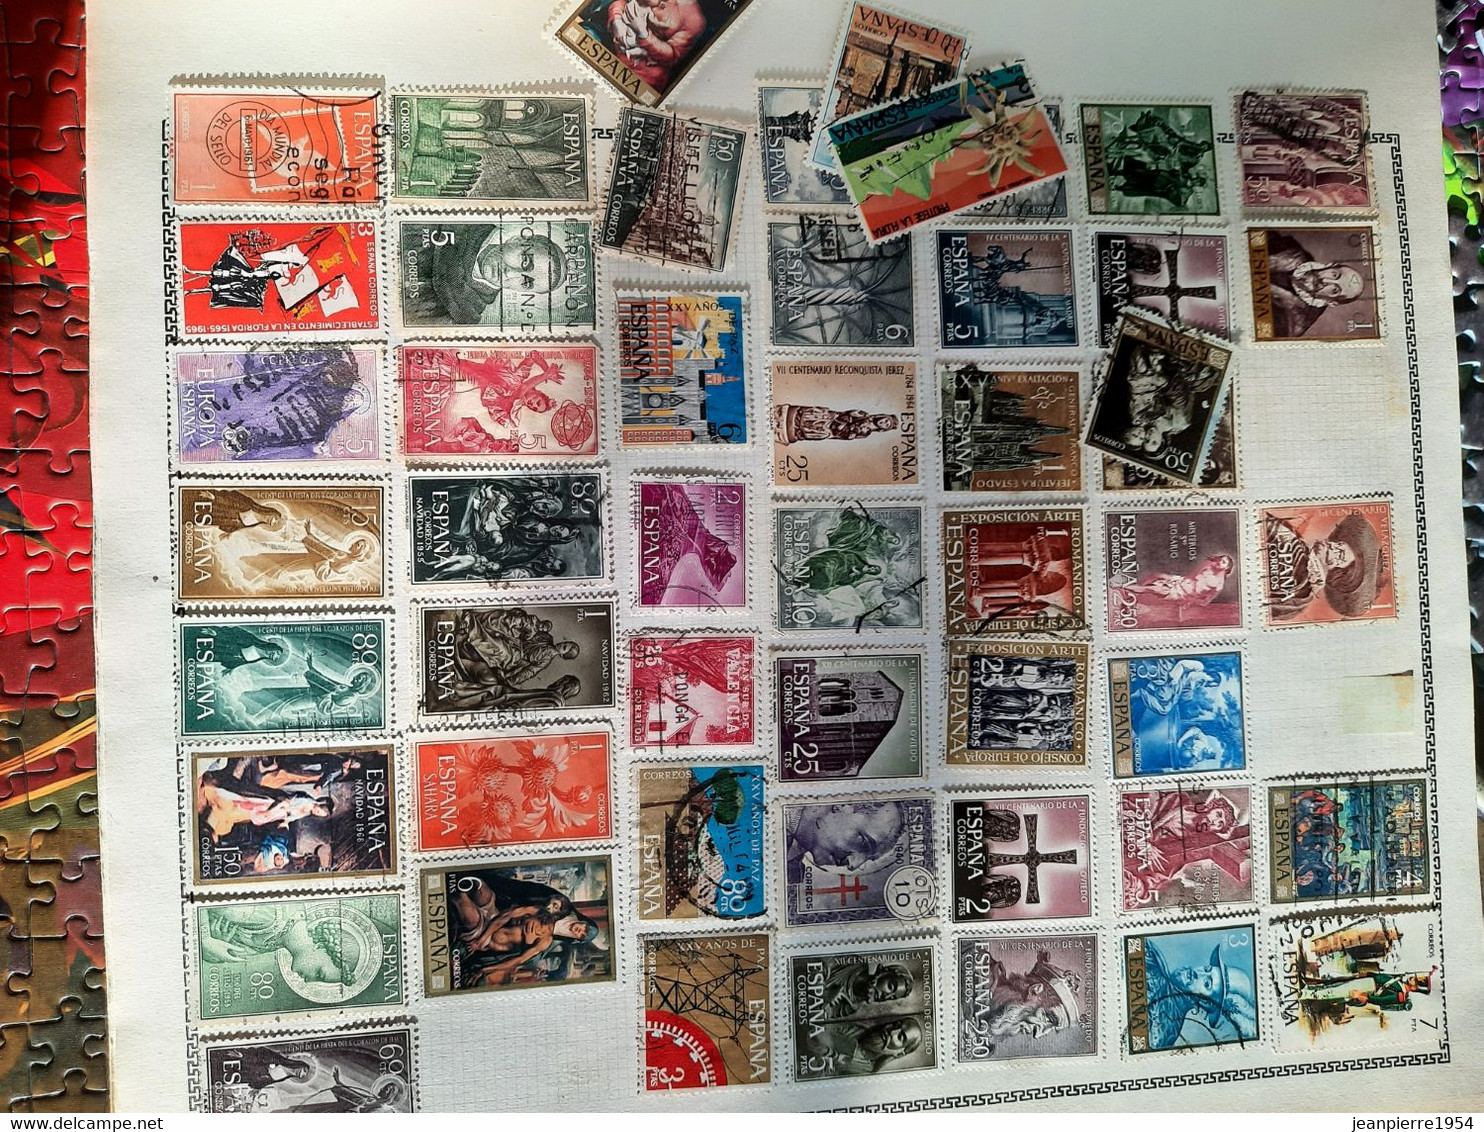 album de timbres du monde obliteres sur feuille avec des timbres des colonies française